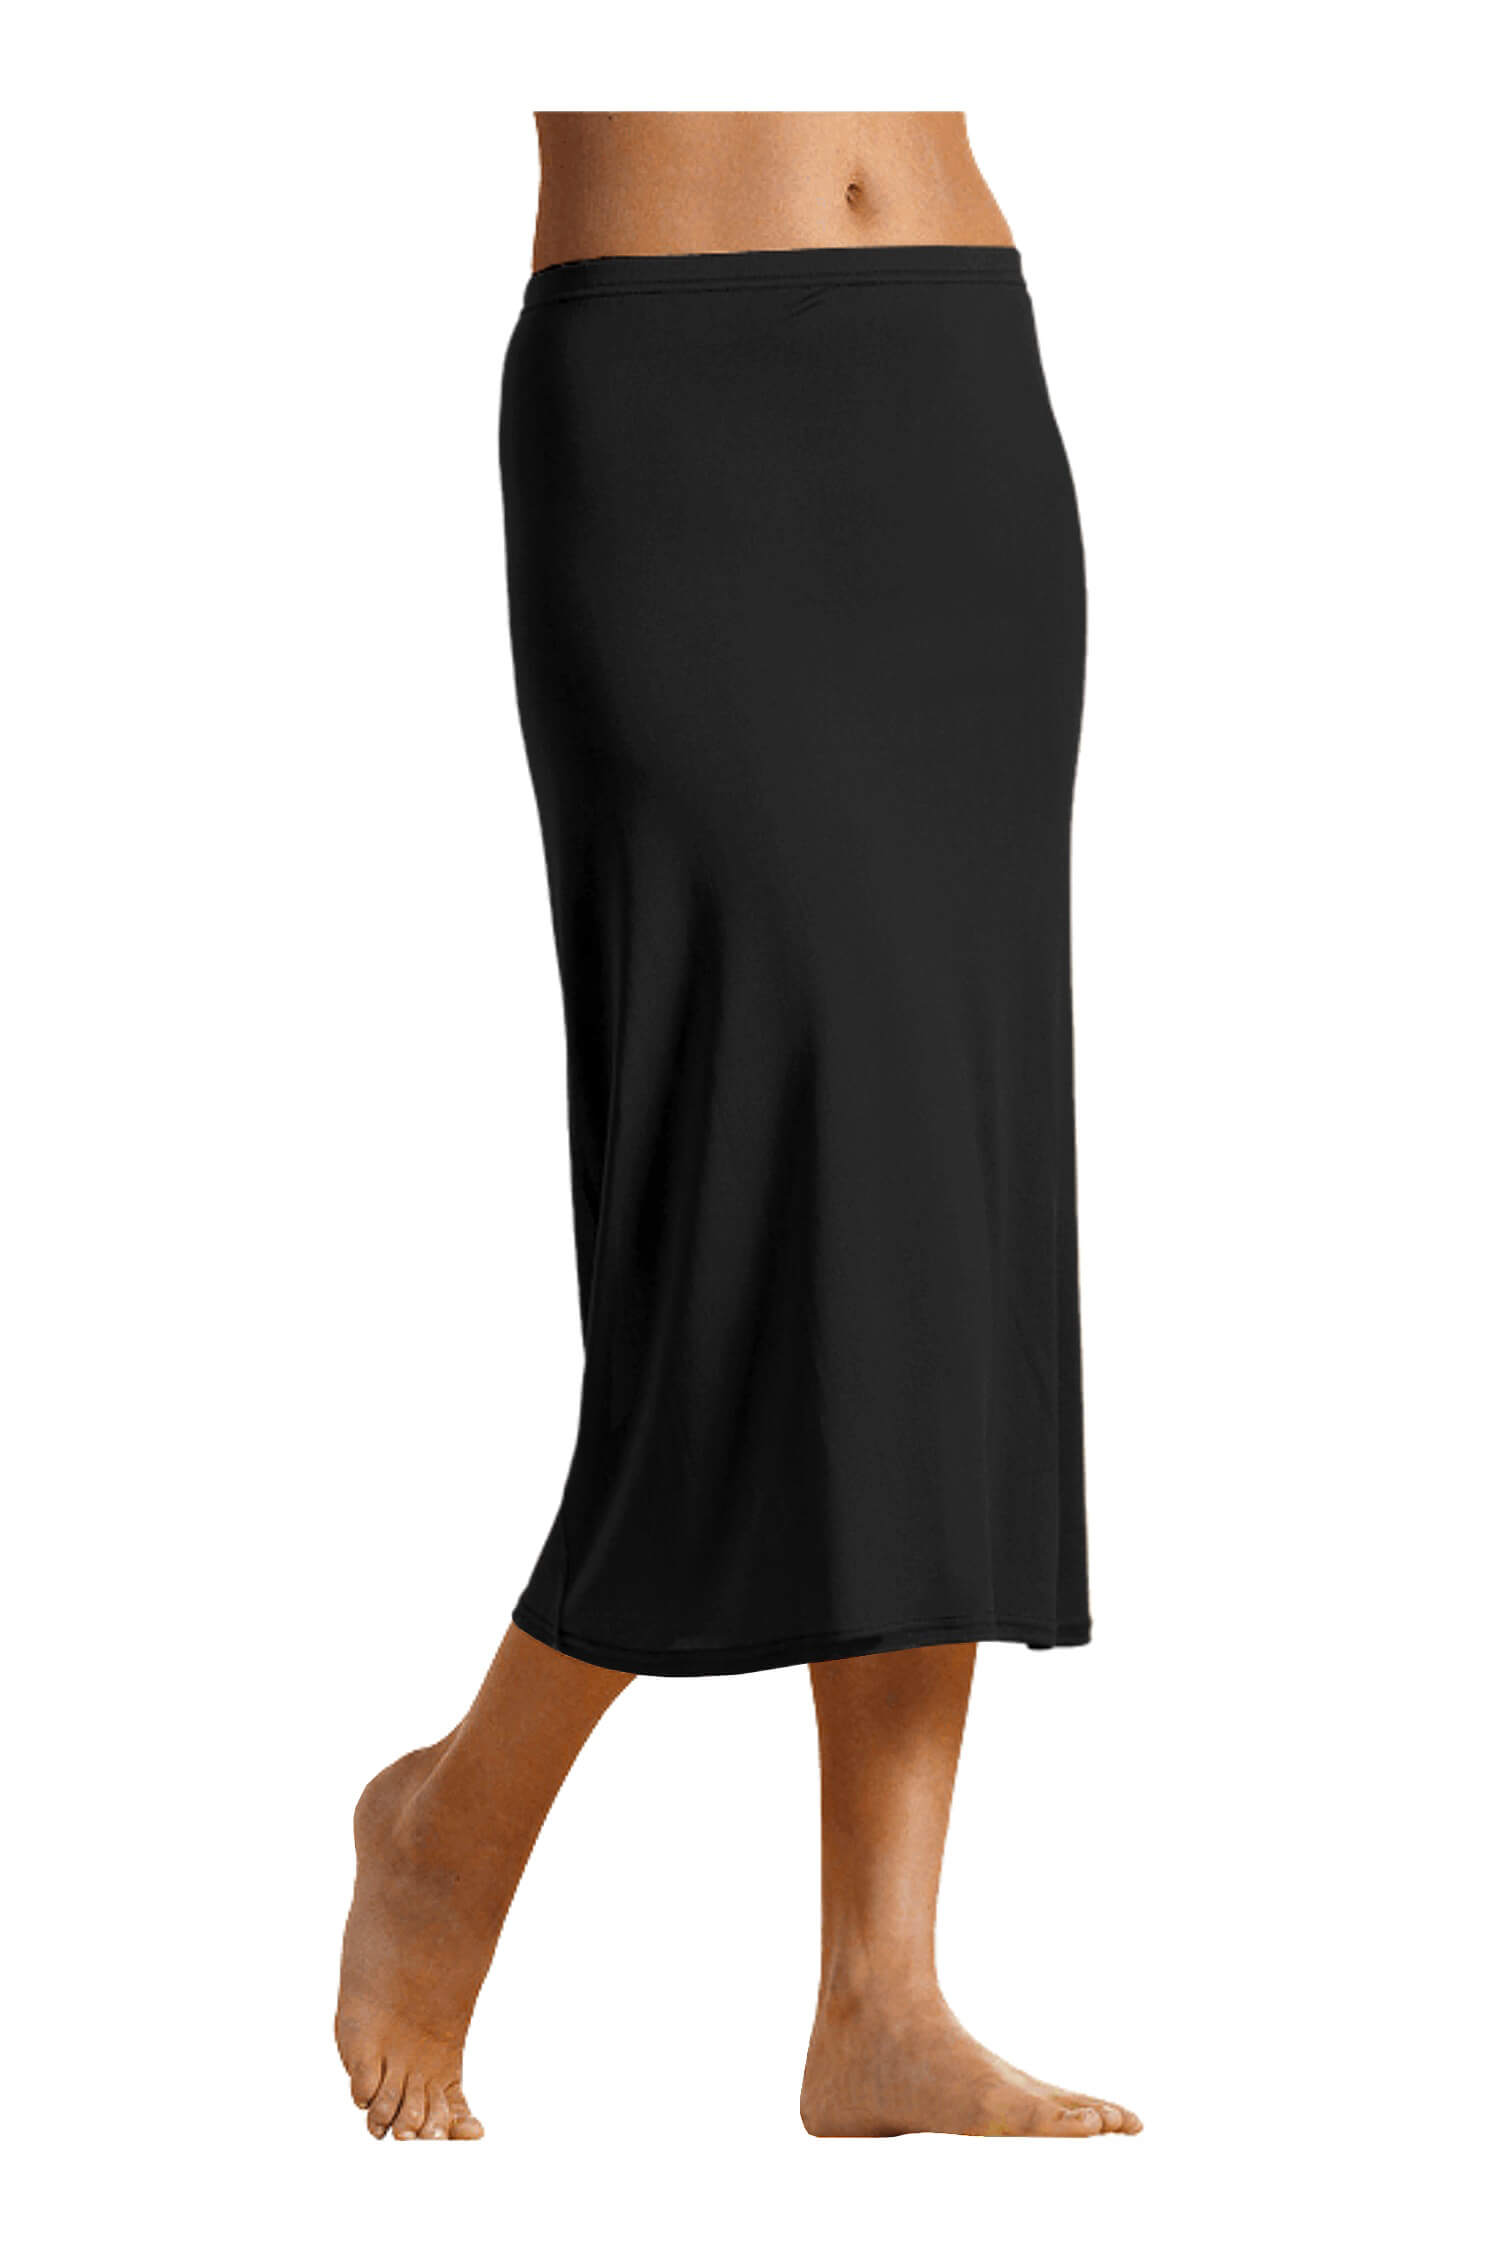 Jovanka bavlněná spodnička - sukně 716 XXL černá